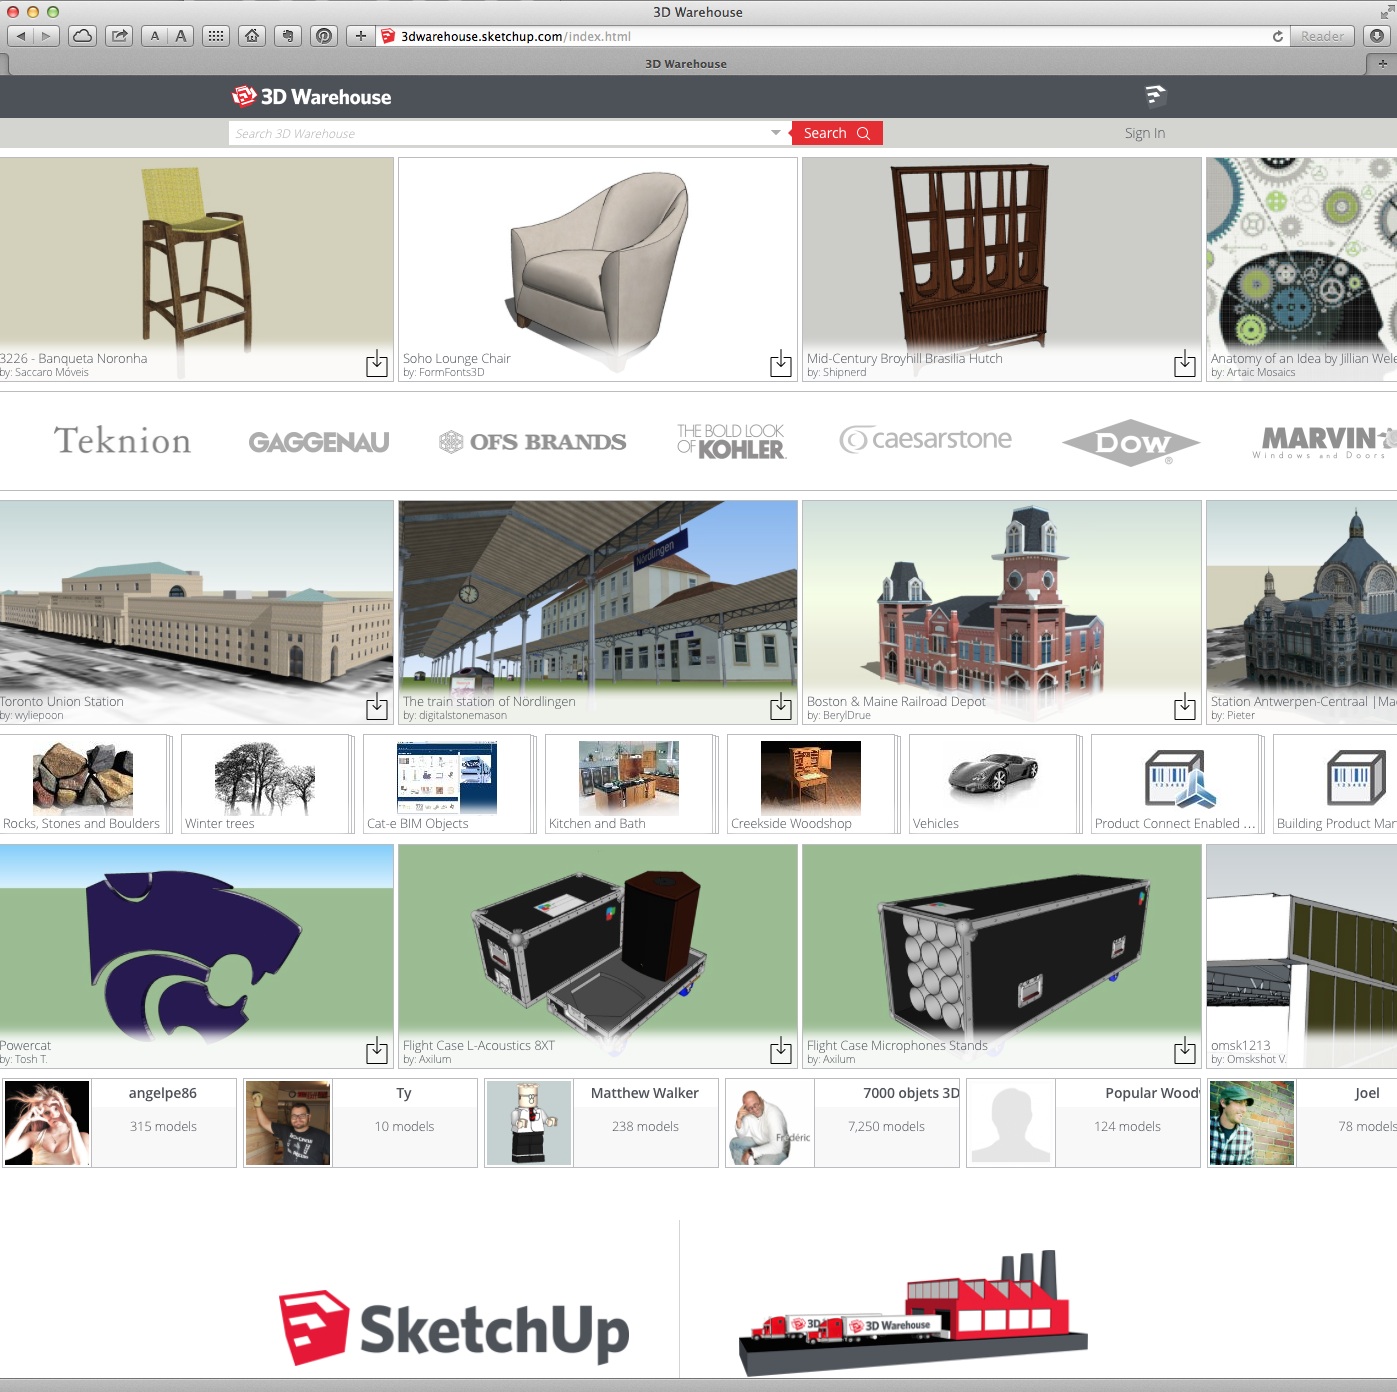 Trimble Announces Enhancements to SketchUp's 3D Warehouse | Architosh